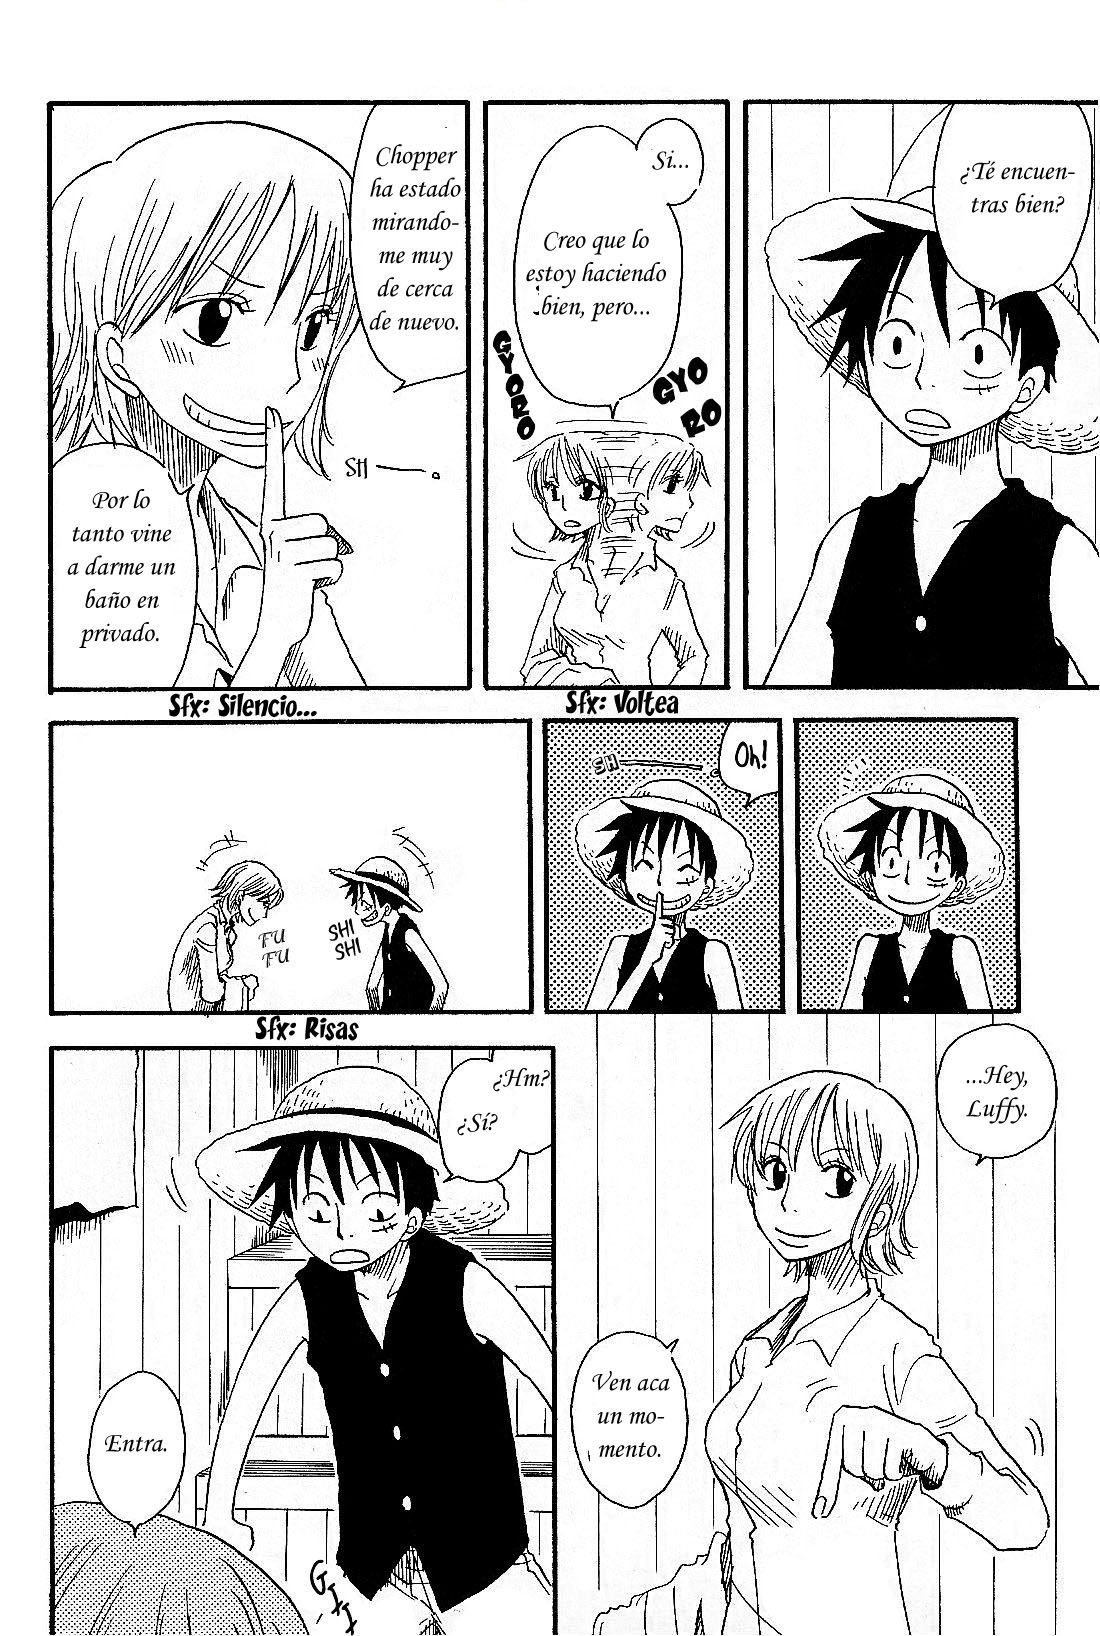 Luffy y Nami romance - 6